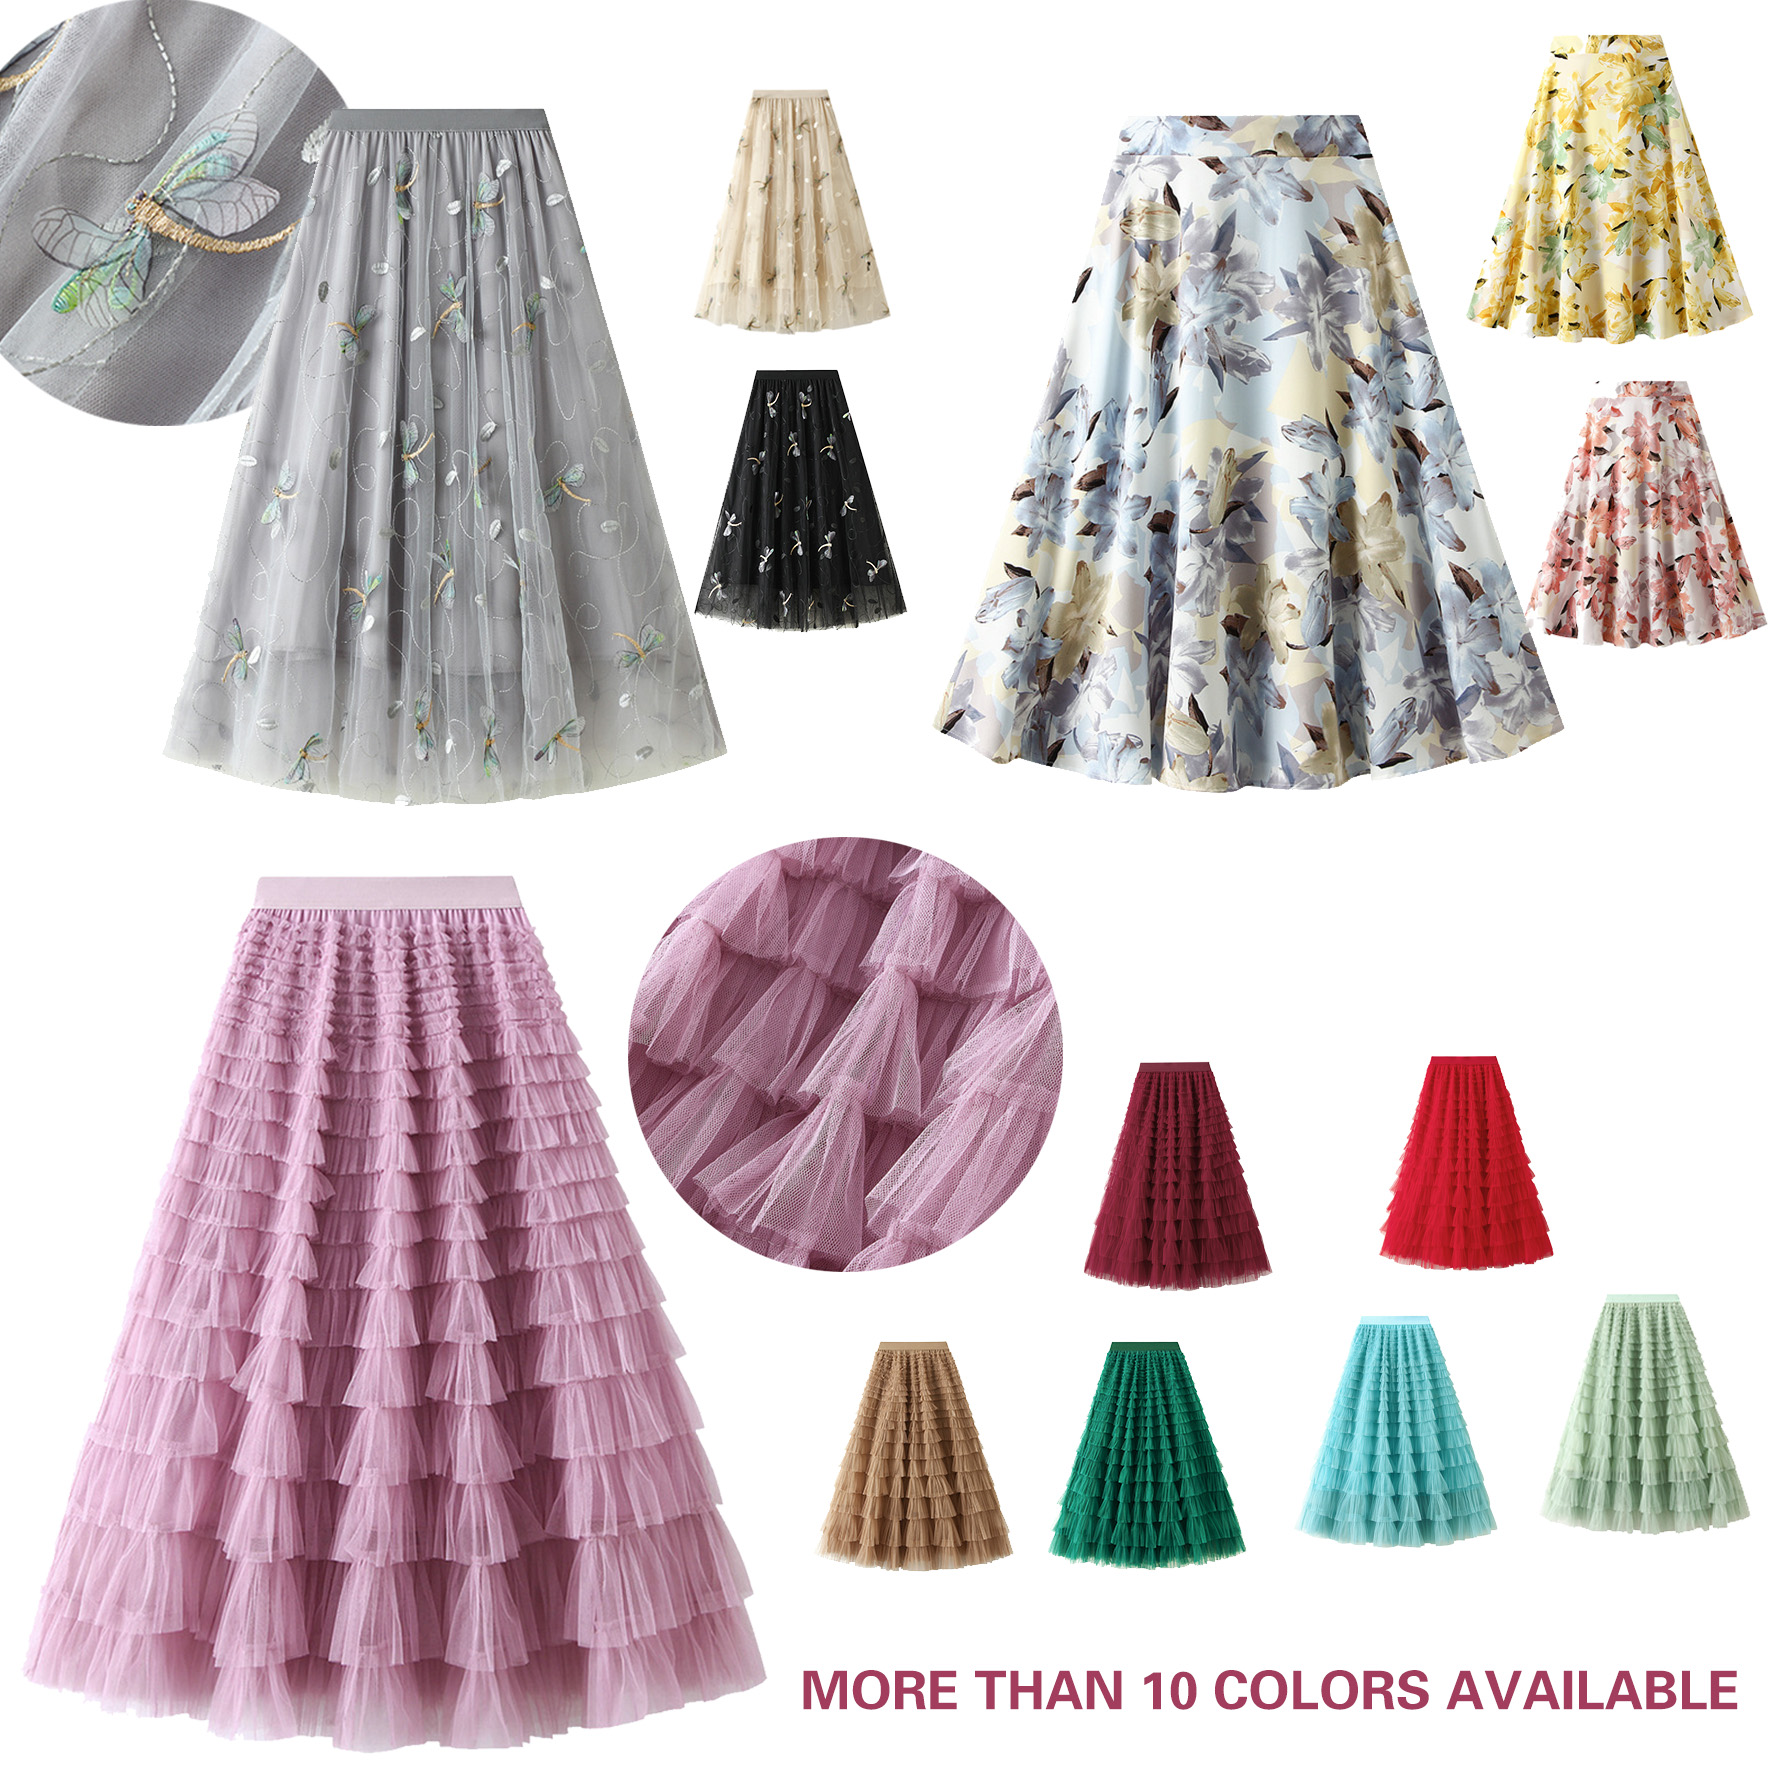 Dames rokken mode -gelaagde rok multi -kleuren tutu rokt een lijn ontworpen jurk met bloemendecoratie elastische taille plus size fit all maten